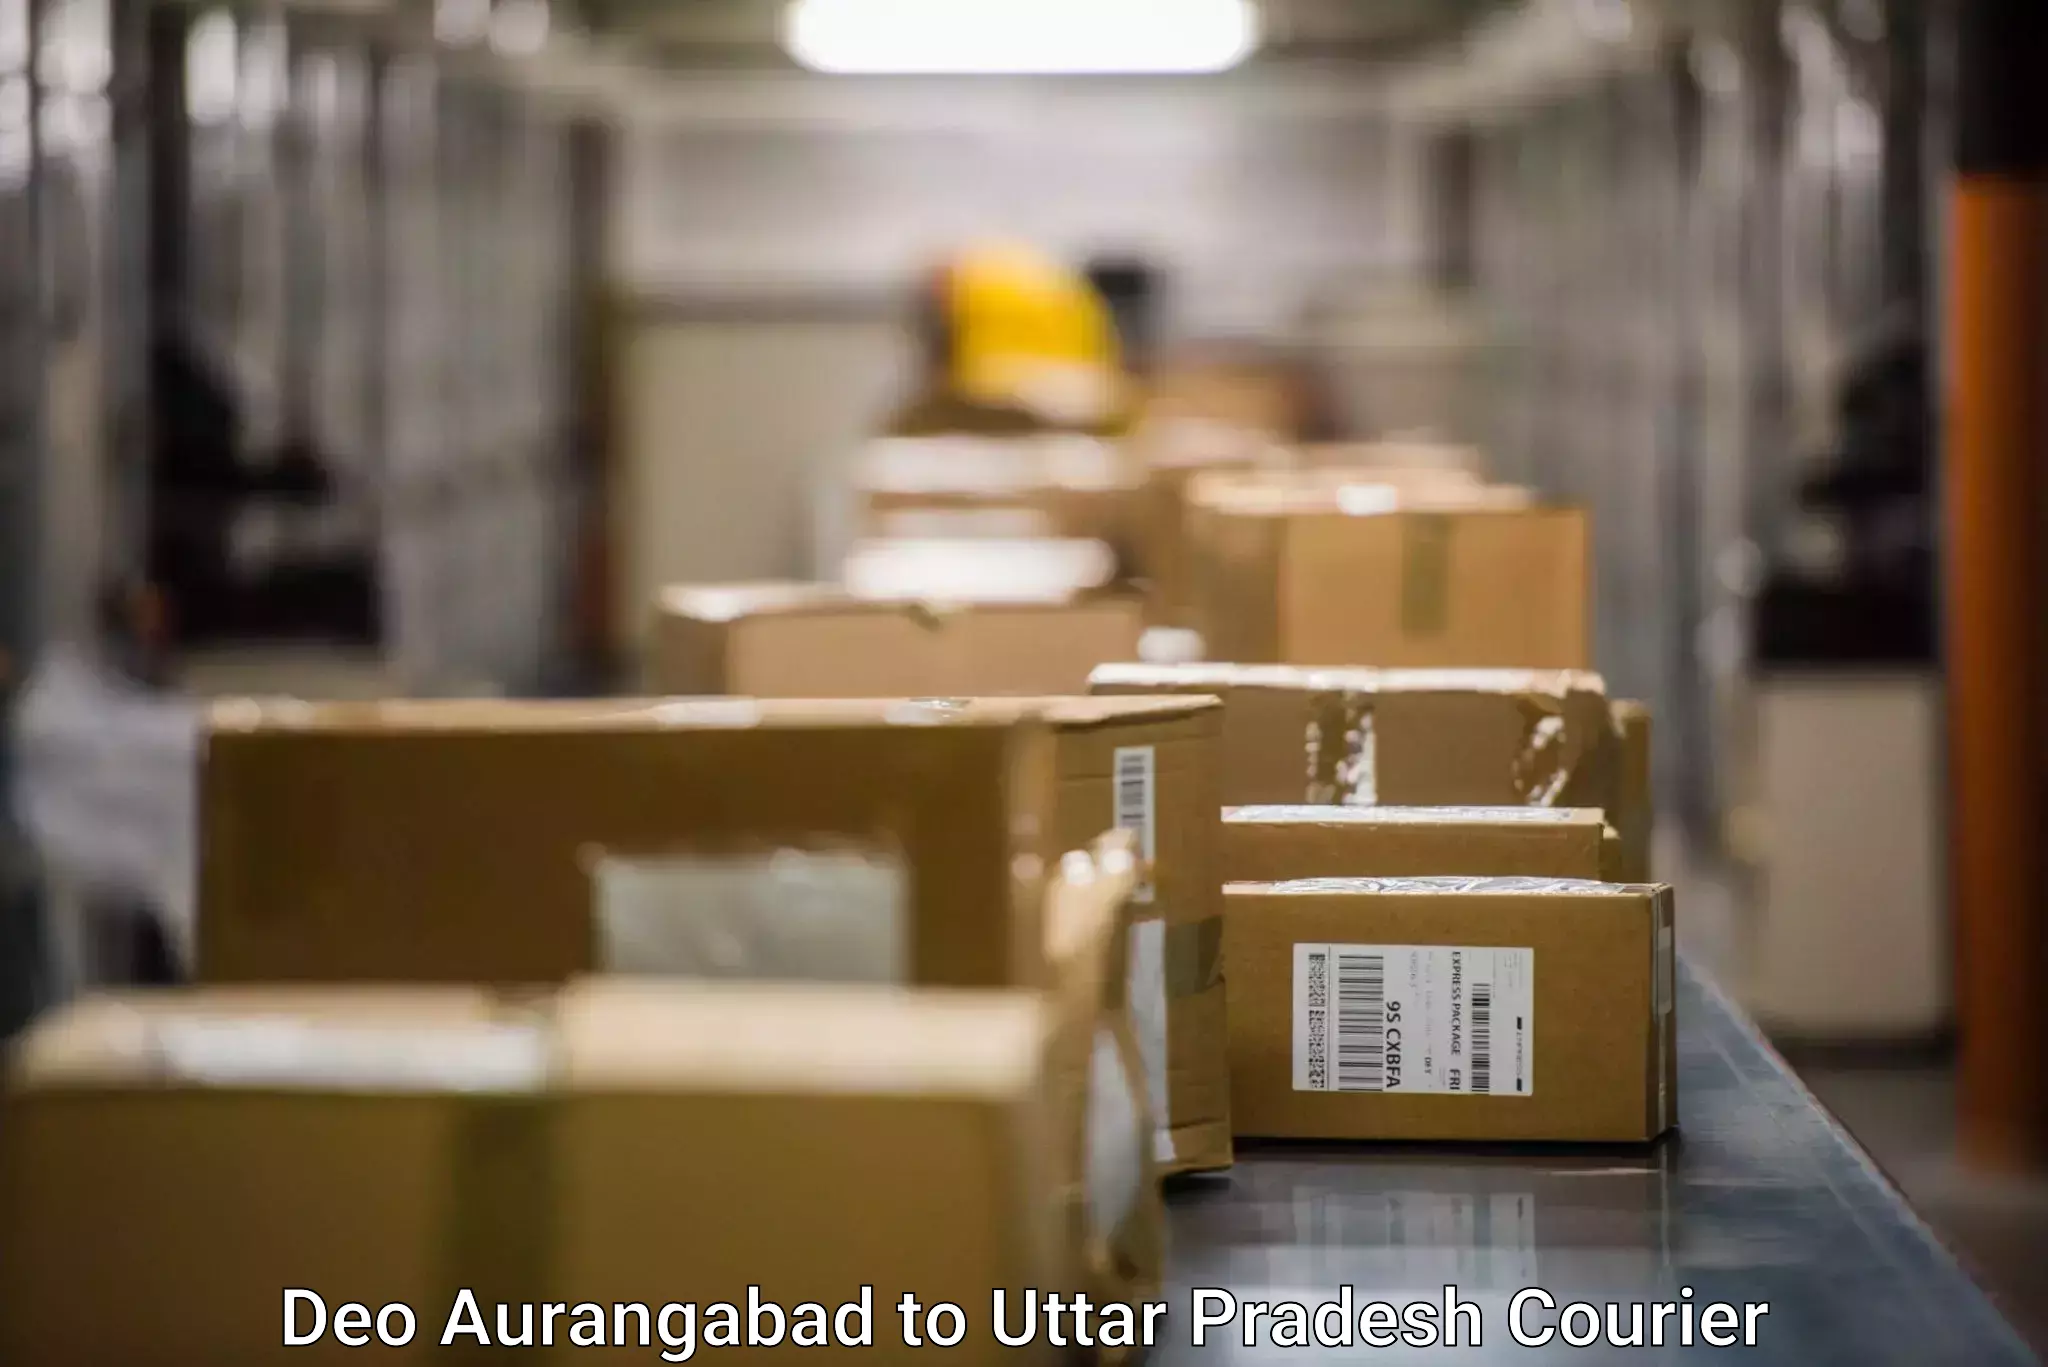 Tracking updates Deo Aurangabad to Uttar Pradesh